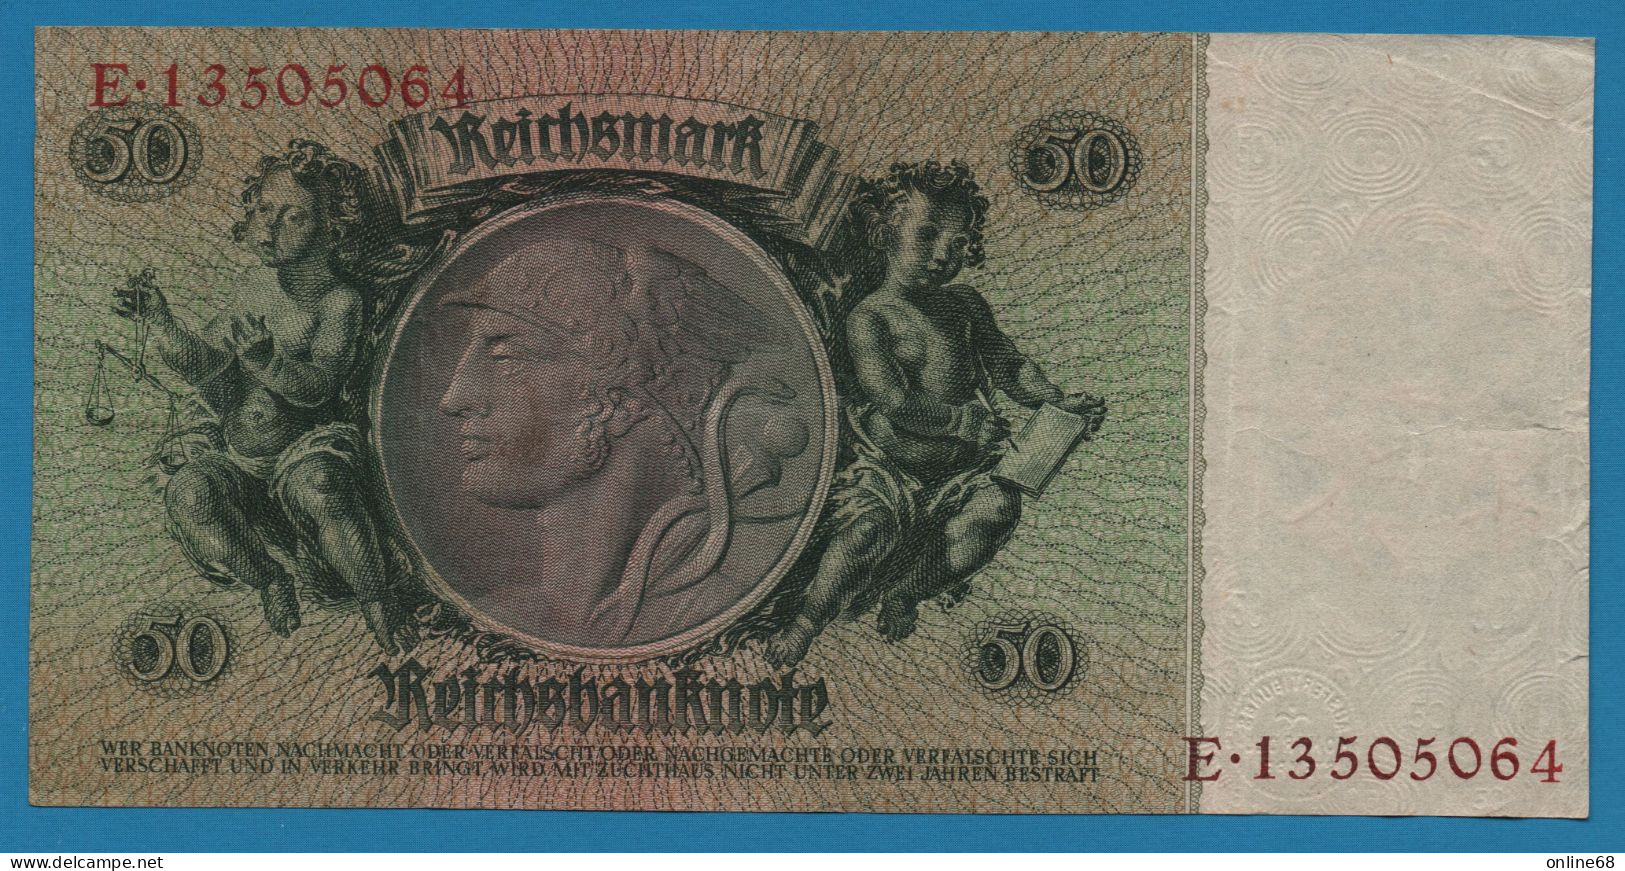 DEUTSCHES REICH 50 REICHSMARK 30.03.1933 LETTER K # E.13505064 P# 182a  David Hansemann - 50 Reichsmark